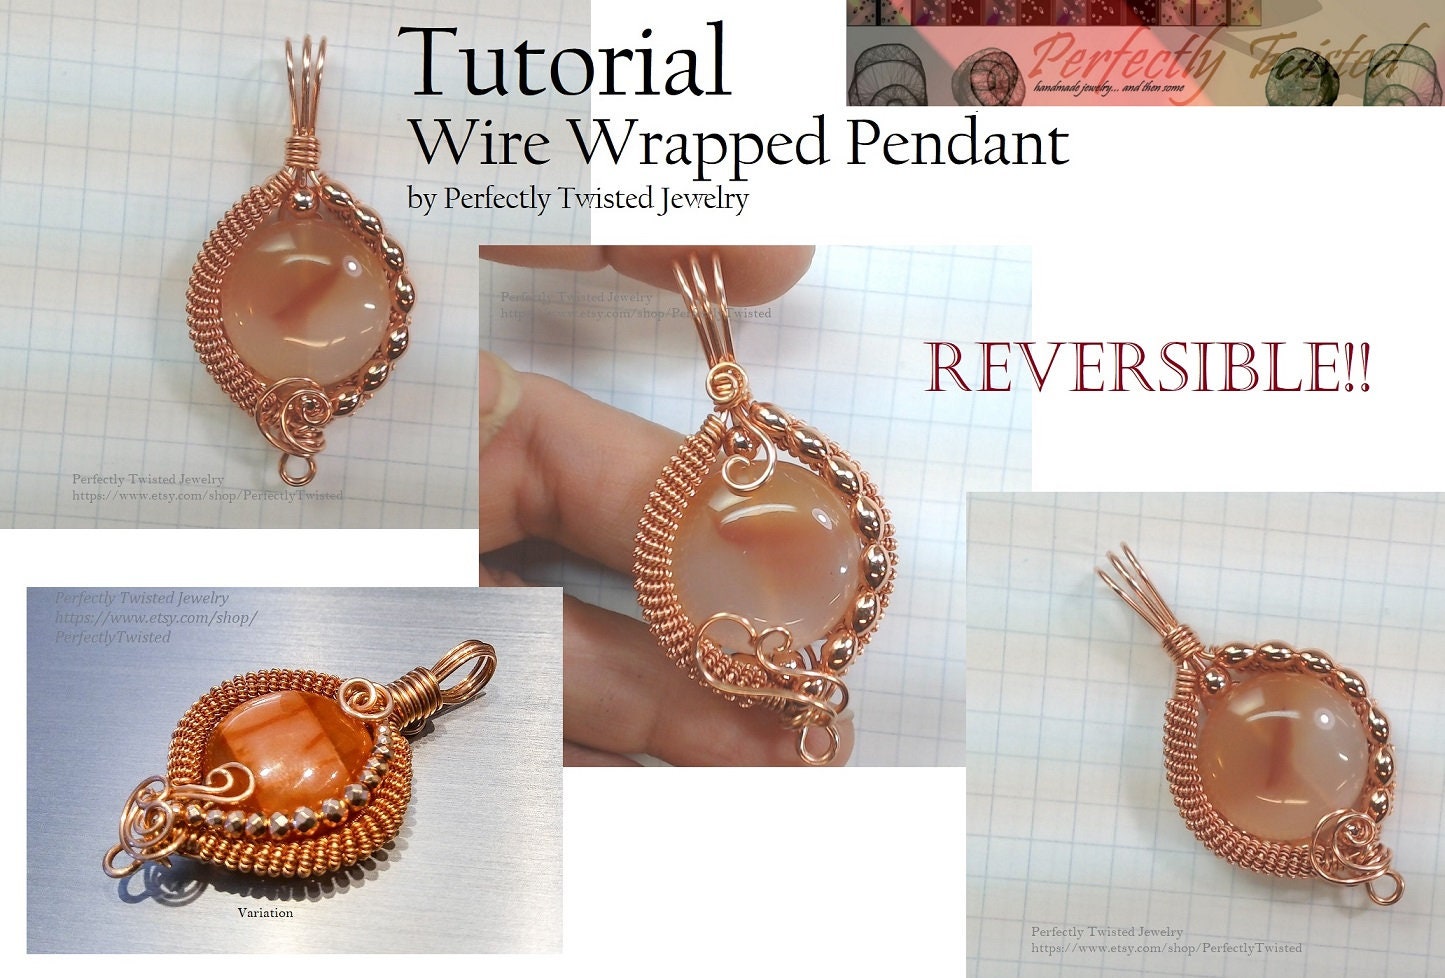 18 Gauge Round Dead Soft Copper Wire: Wire Jewelry, Wire Wrap Tutorials